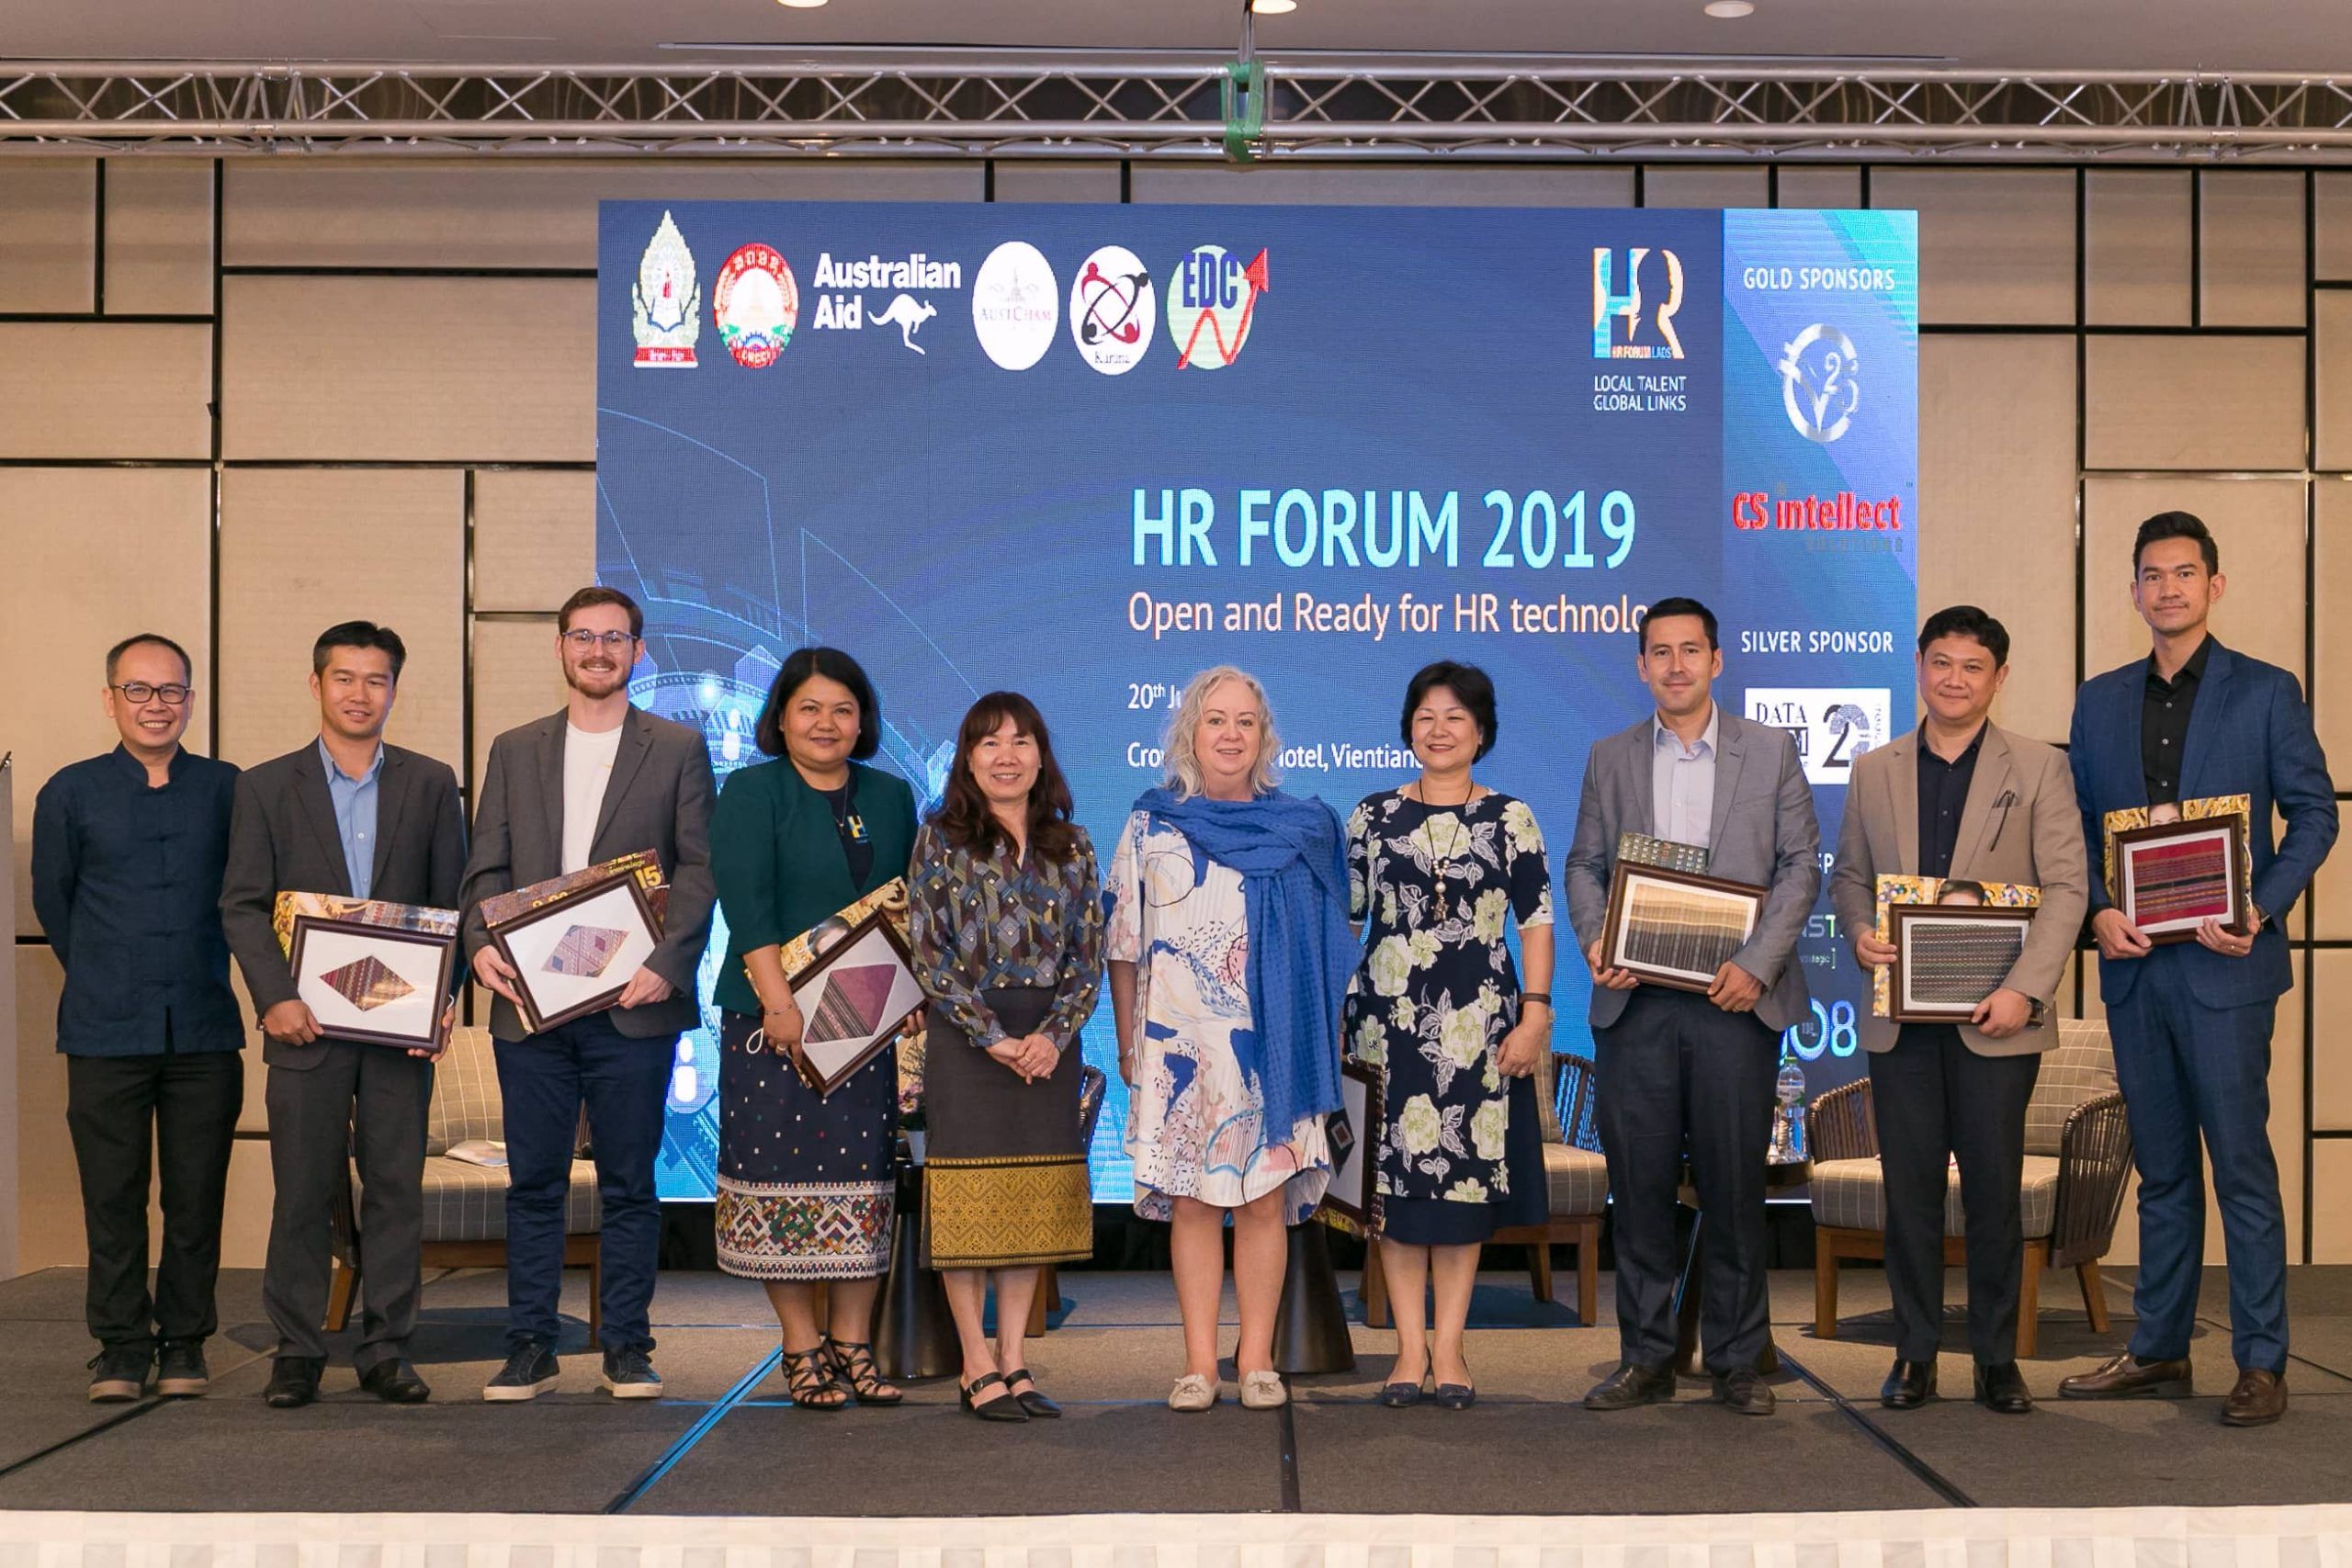 HR Forum 2019